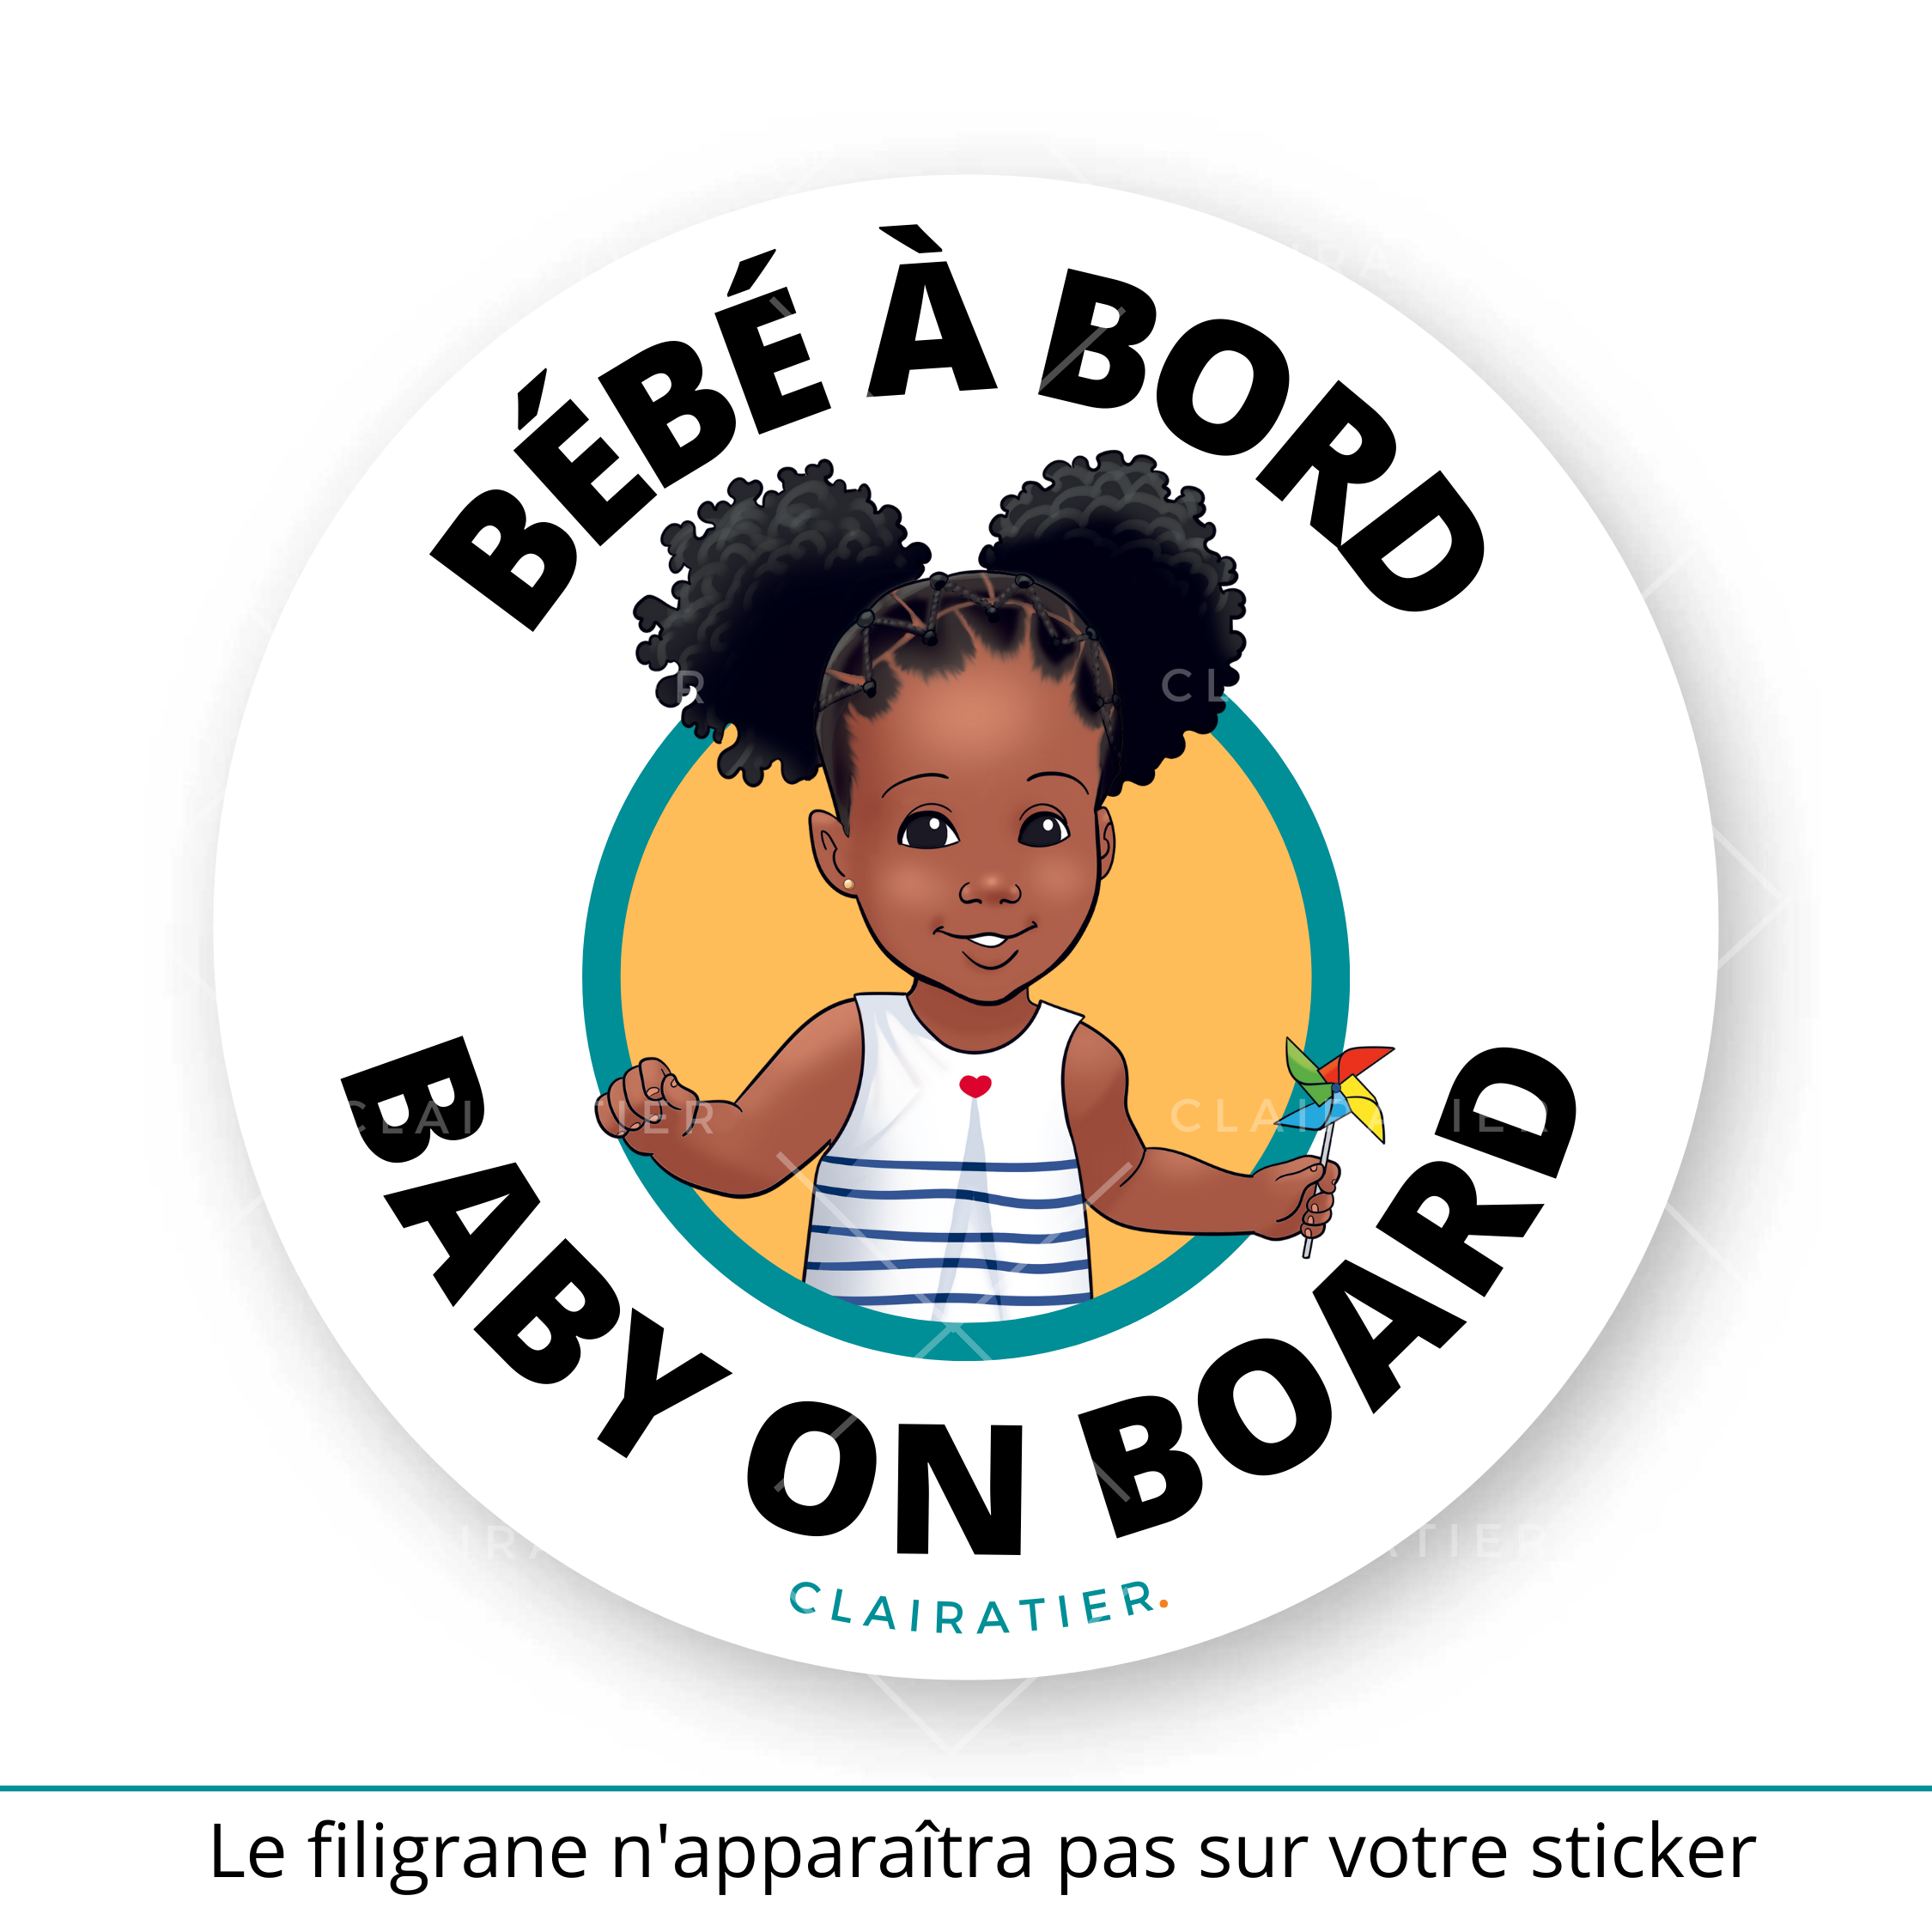 Stickers Autocollant Bébé à Bord voiture